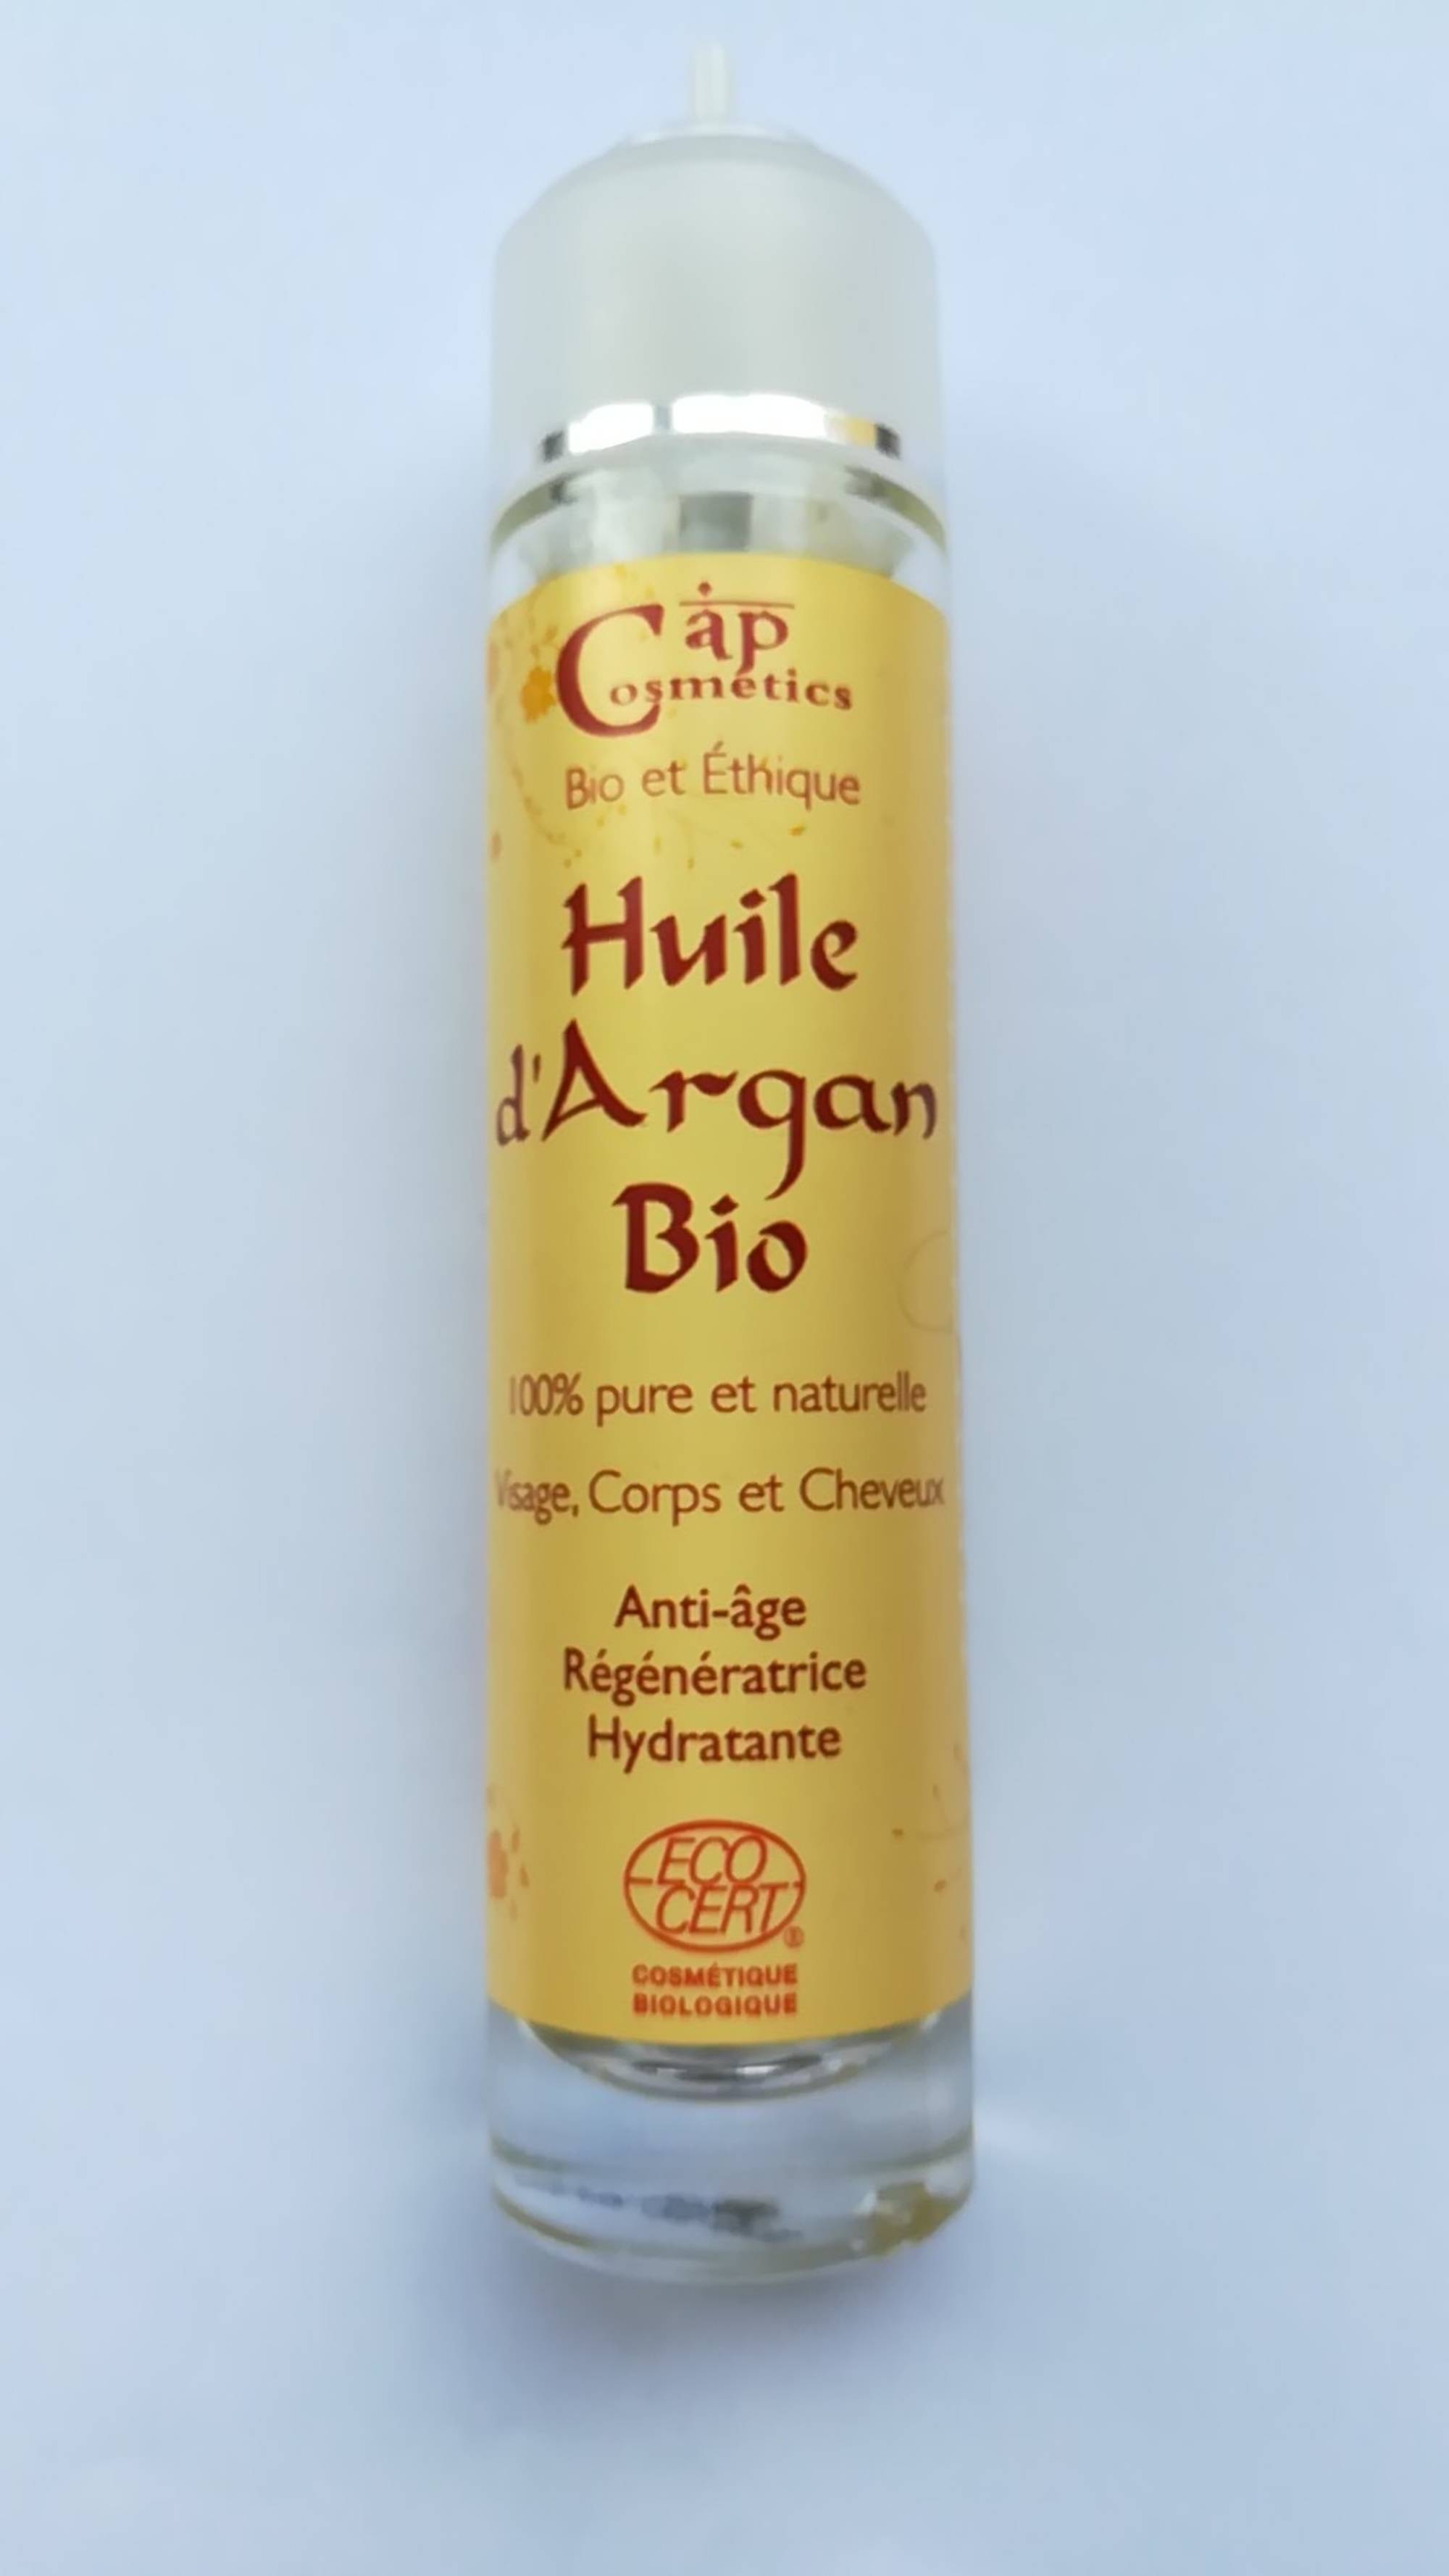 CAP COSMETICS - Huile d'argan bio - Anti-âge